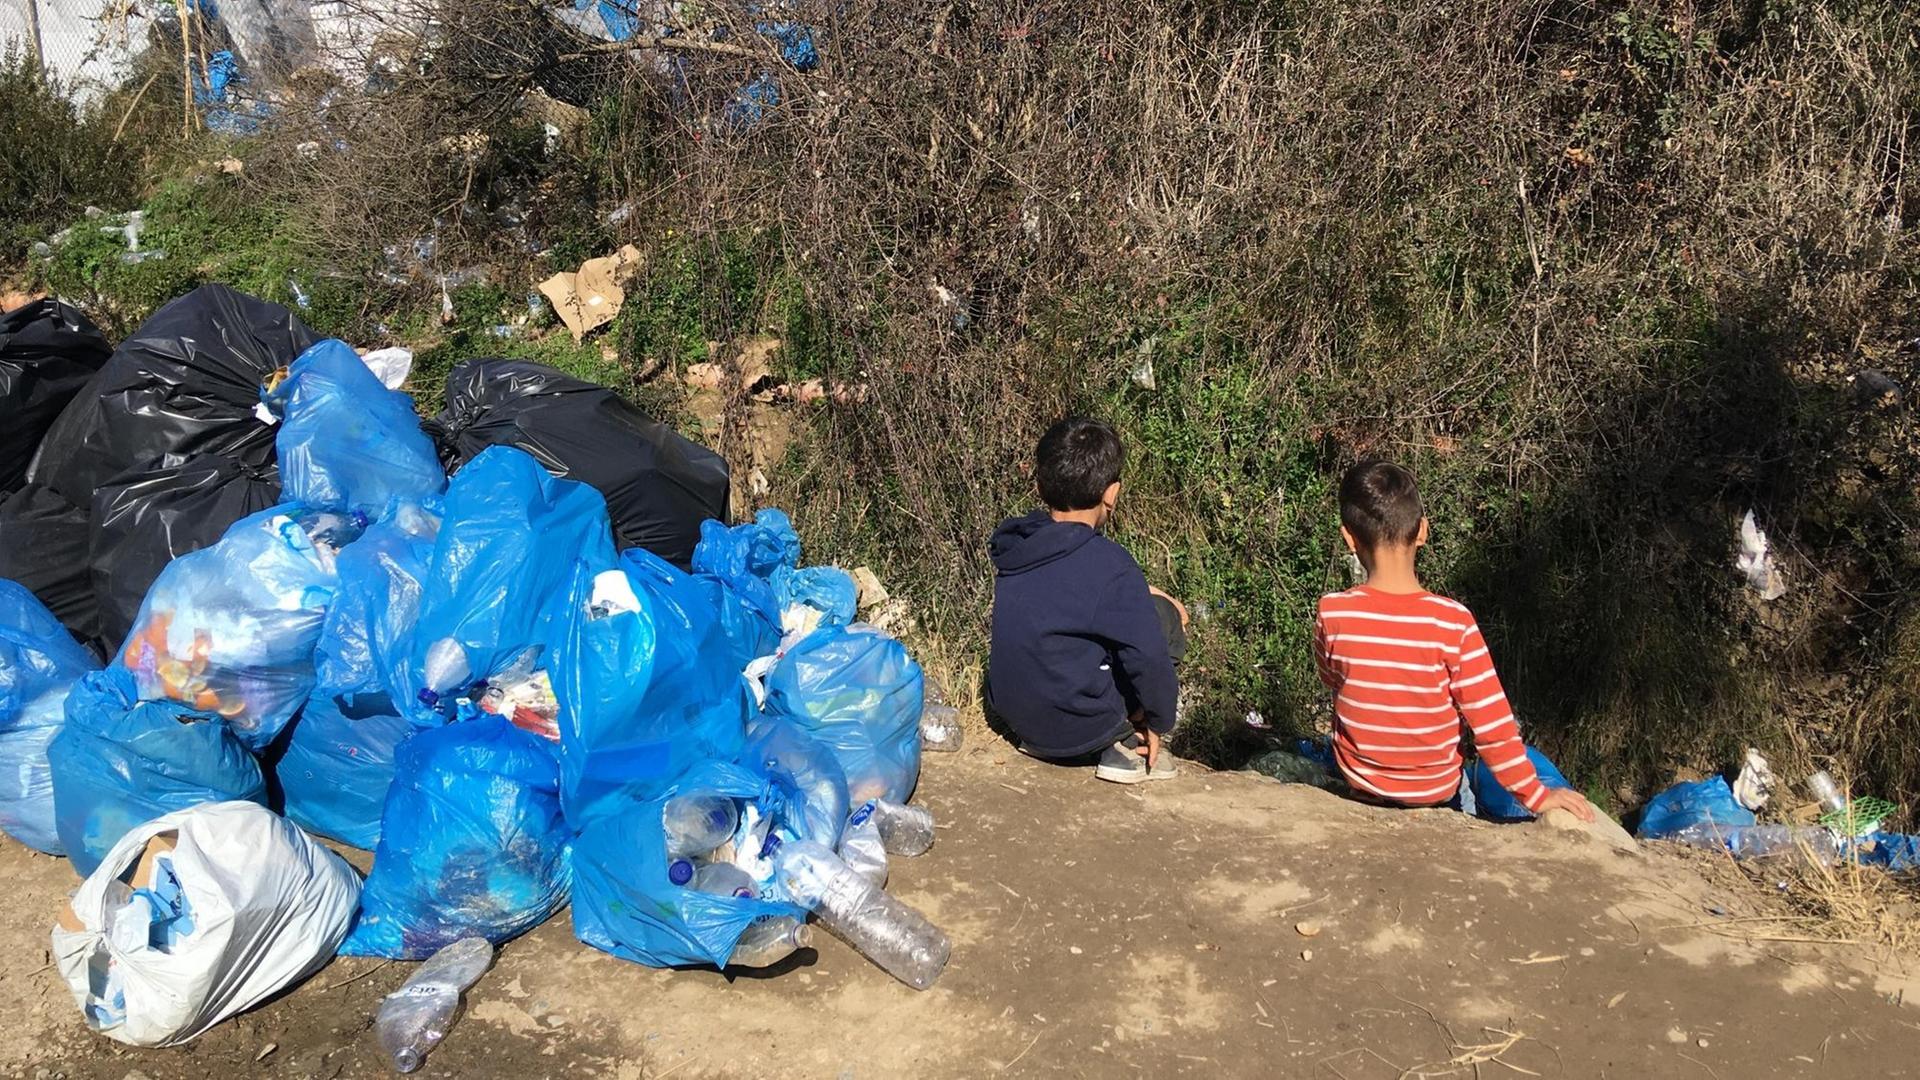 Kinder sitzen in einem Flüchtlings-Lager in Griechenland. Neben den Kinder liegt Müll.